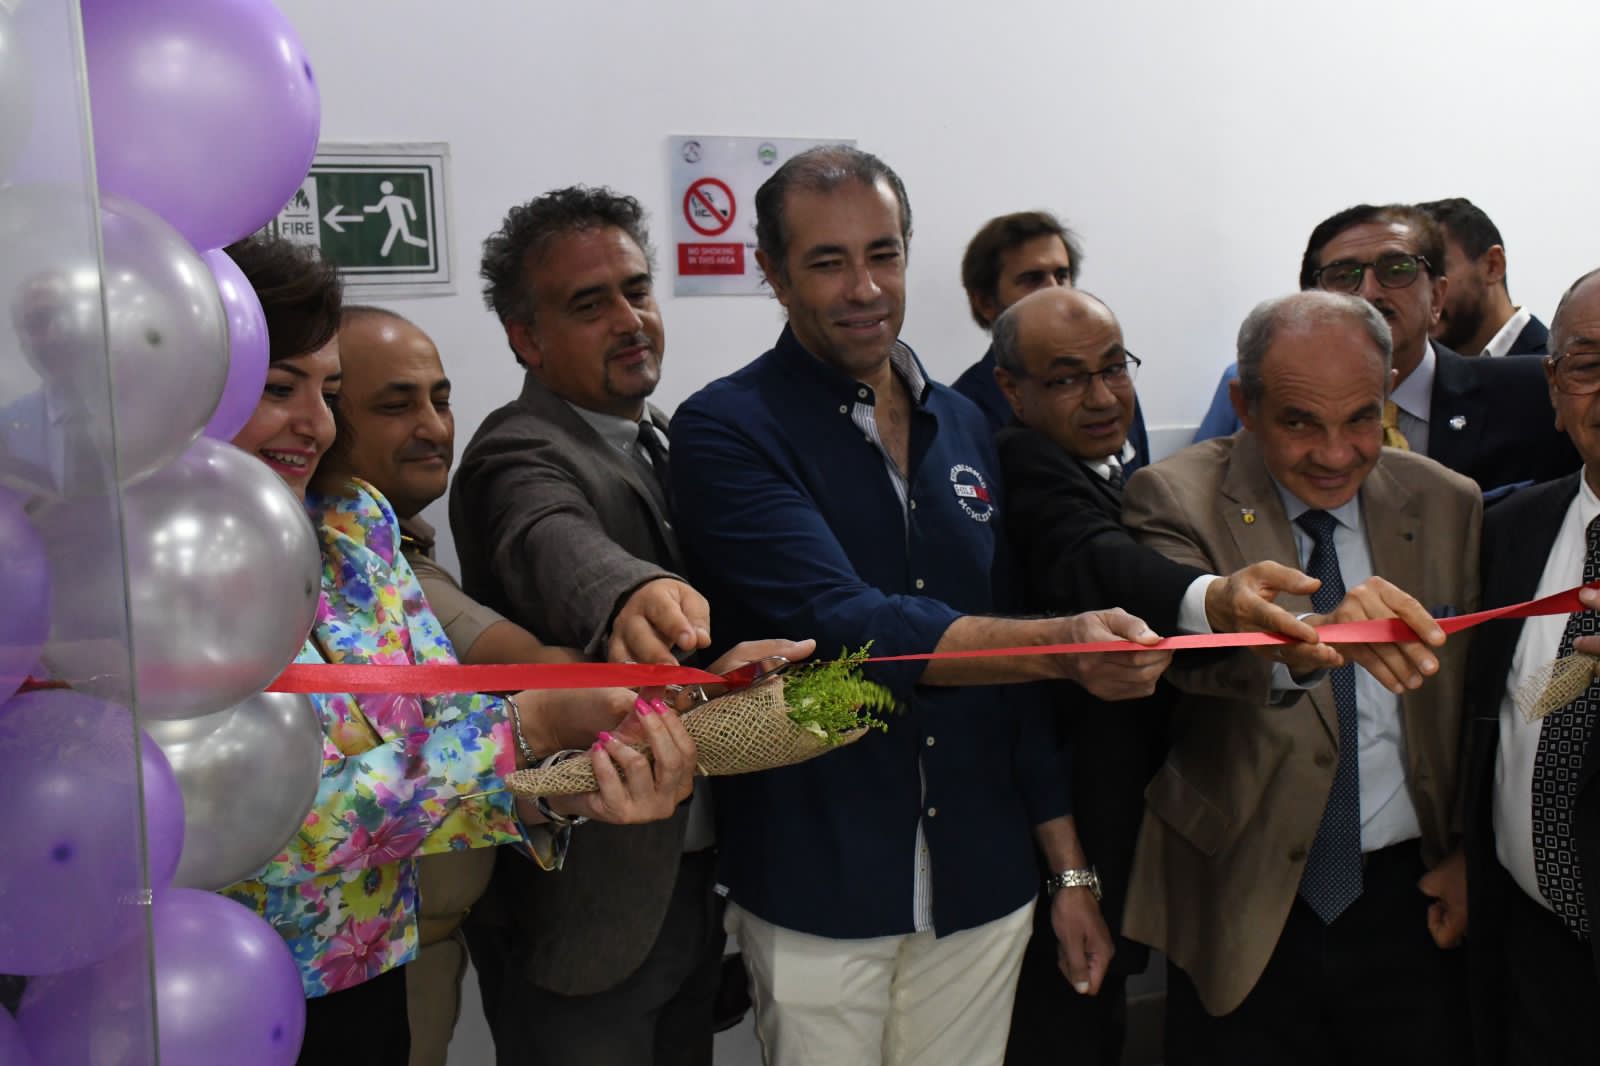 إفتتاح أول معمل رقمى على مستوى الجمهورية بكلية طب الأسنان بجامعة مصر للعلوم والتكنولوجيا (6)